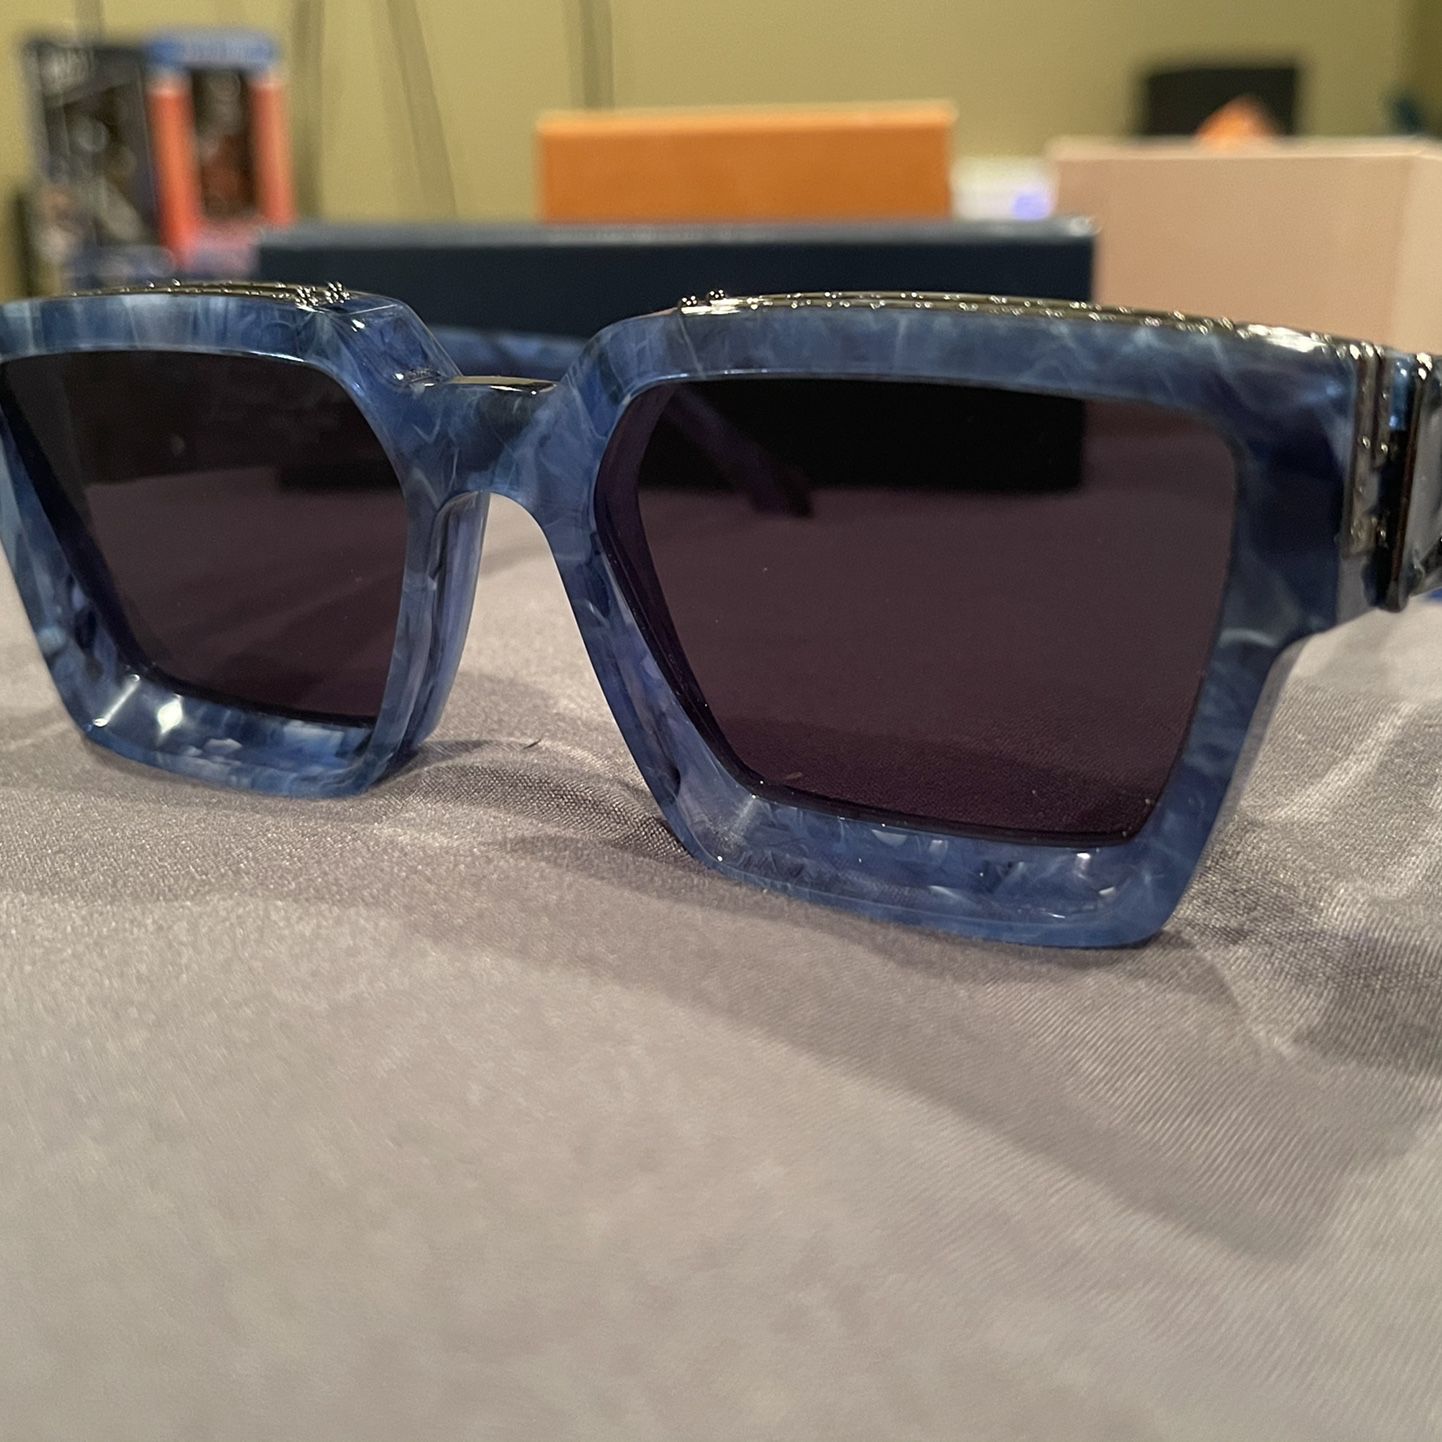 Louis Vuitton 1.1millionaire Sunglasses for Sale in Chandler, AZ - OfferUp